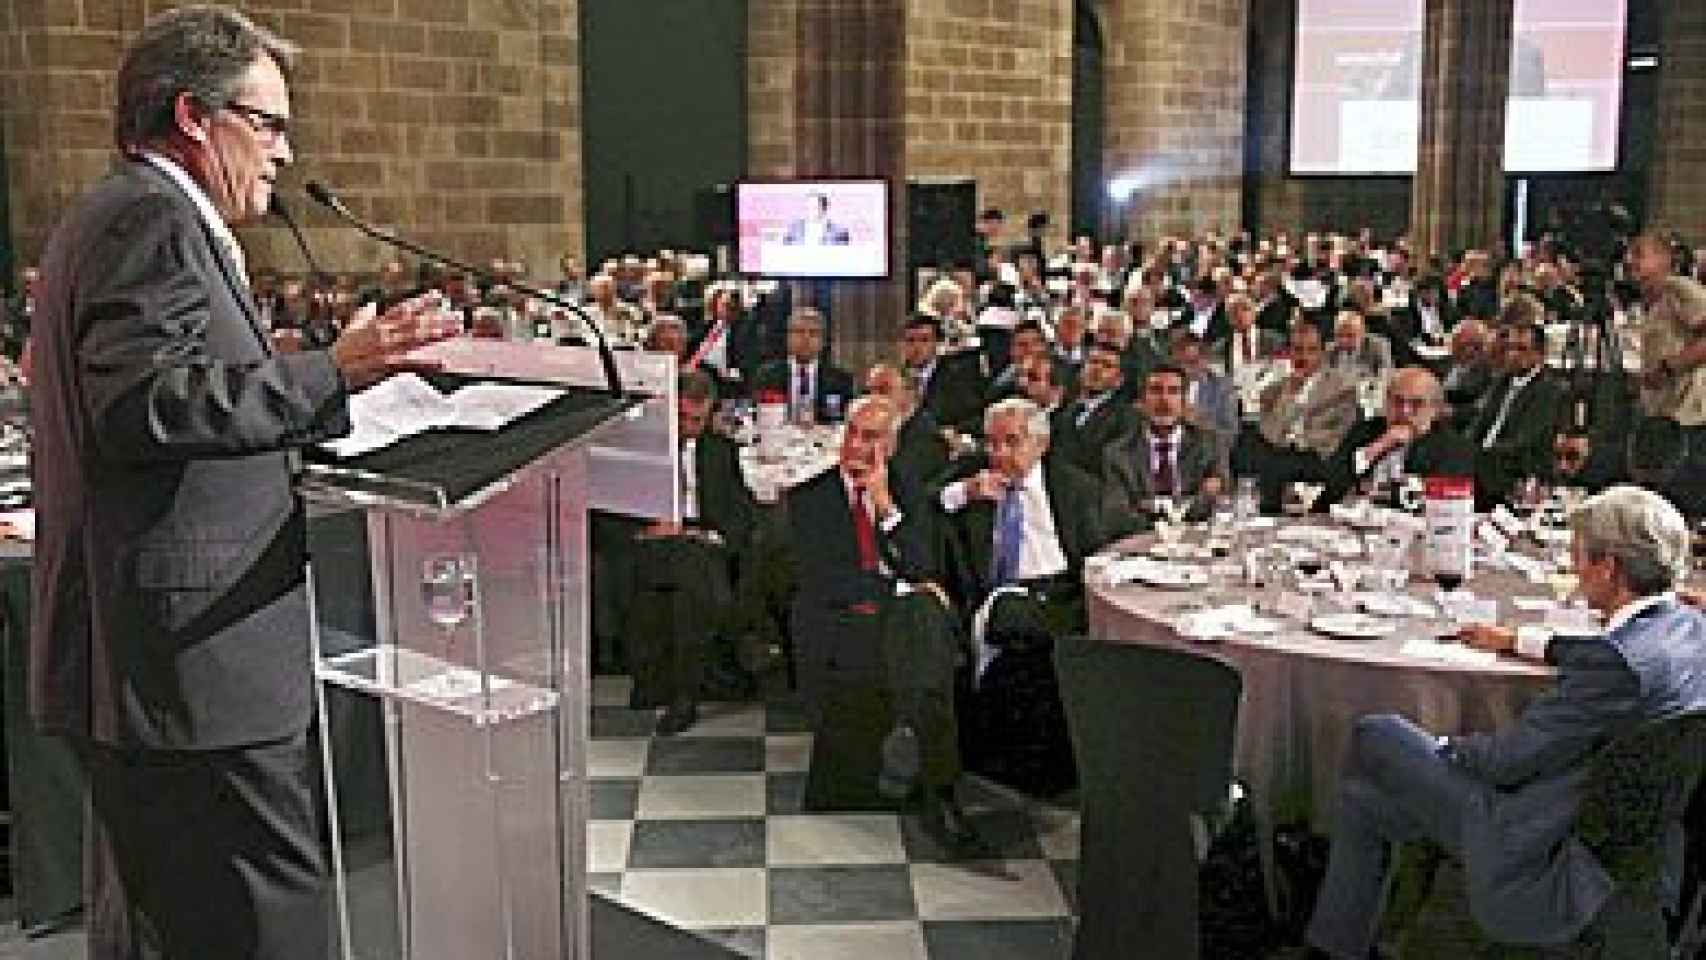 El presidente de la Generalidad, Artur Mas, durante su intervención en el acto organizado por la Cámara de Comercio de Barcelona